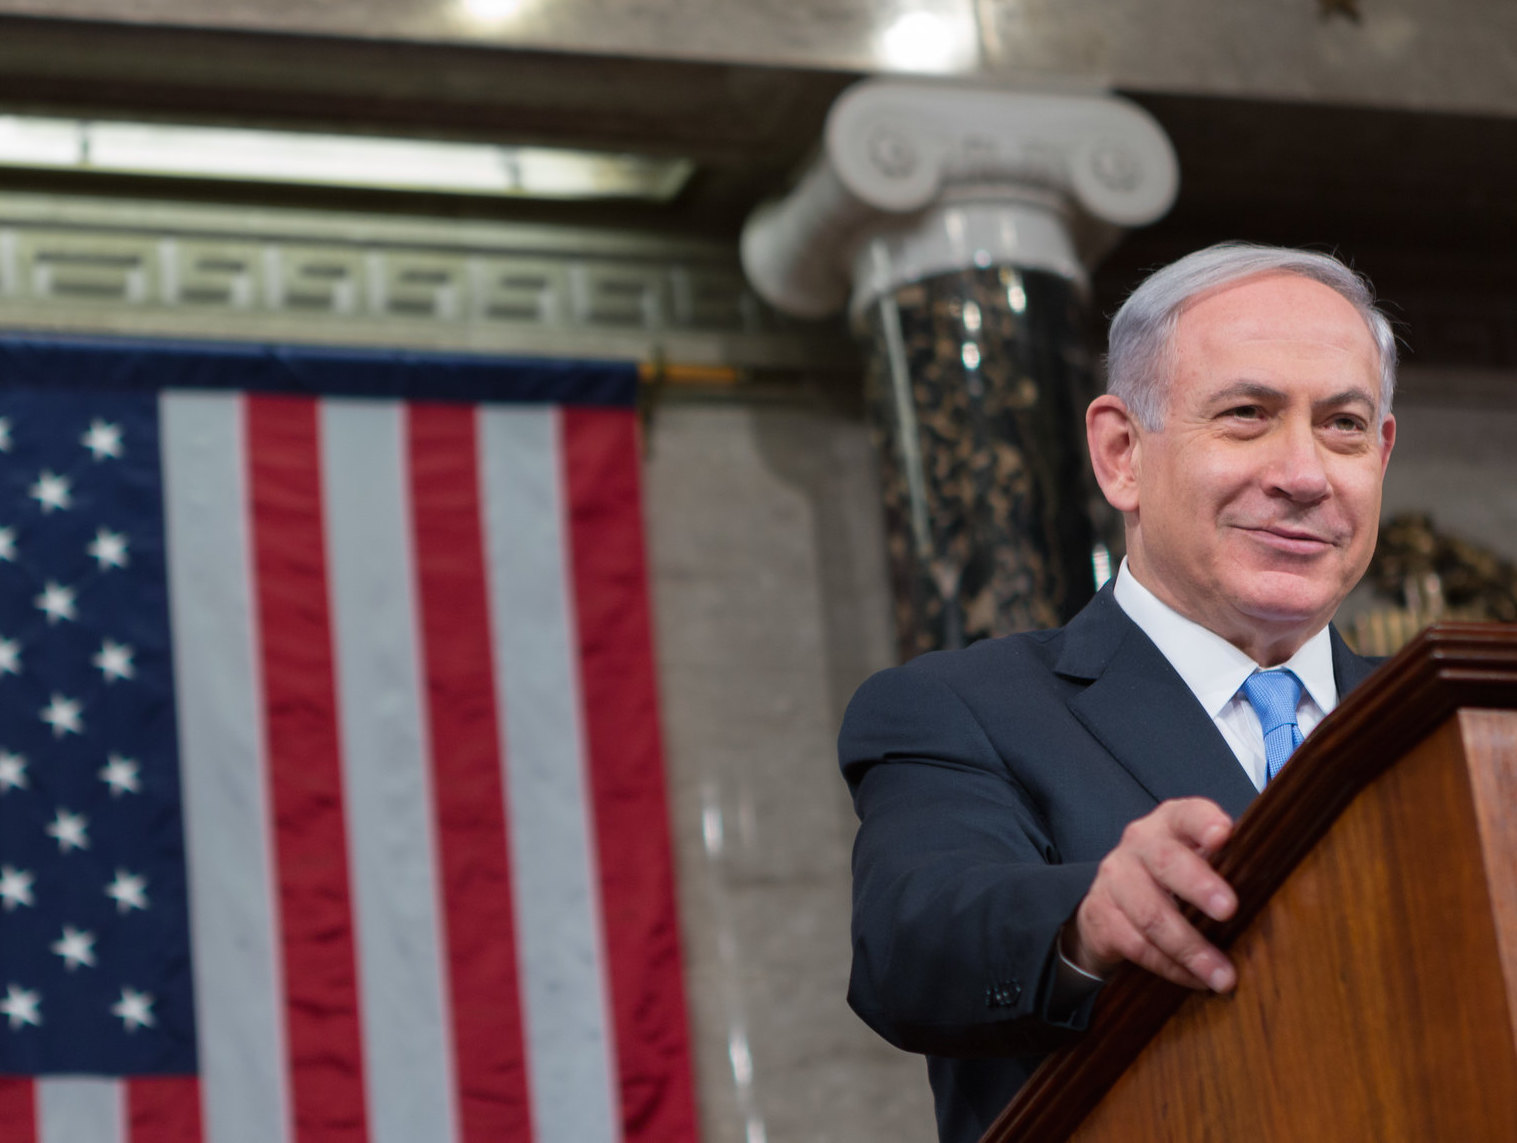 Benjamin Netanyahu at a podium in Congress.